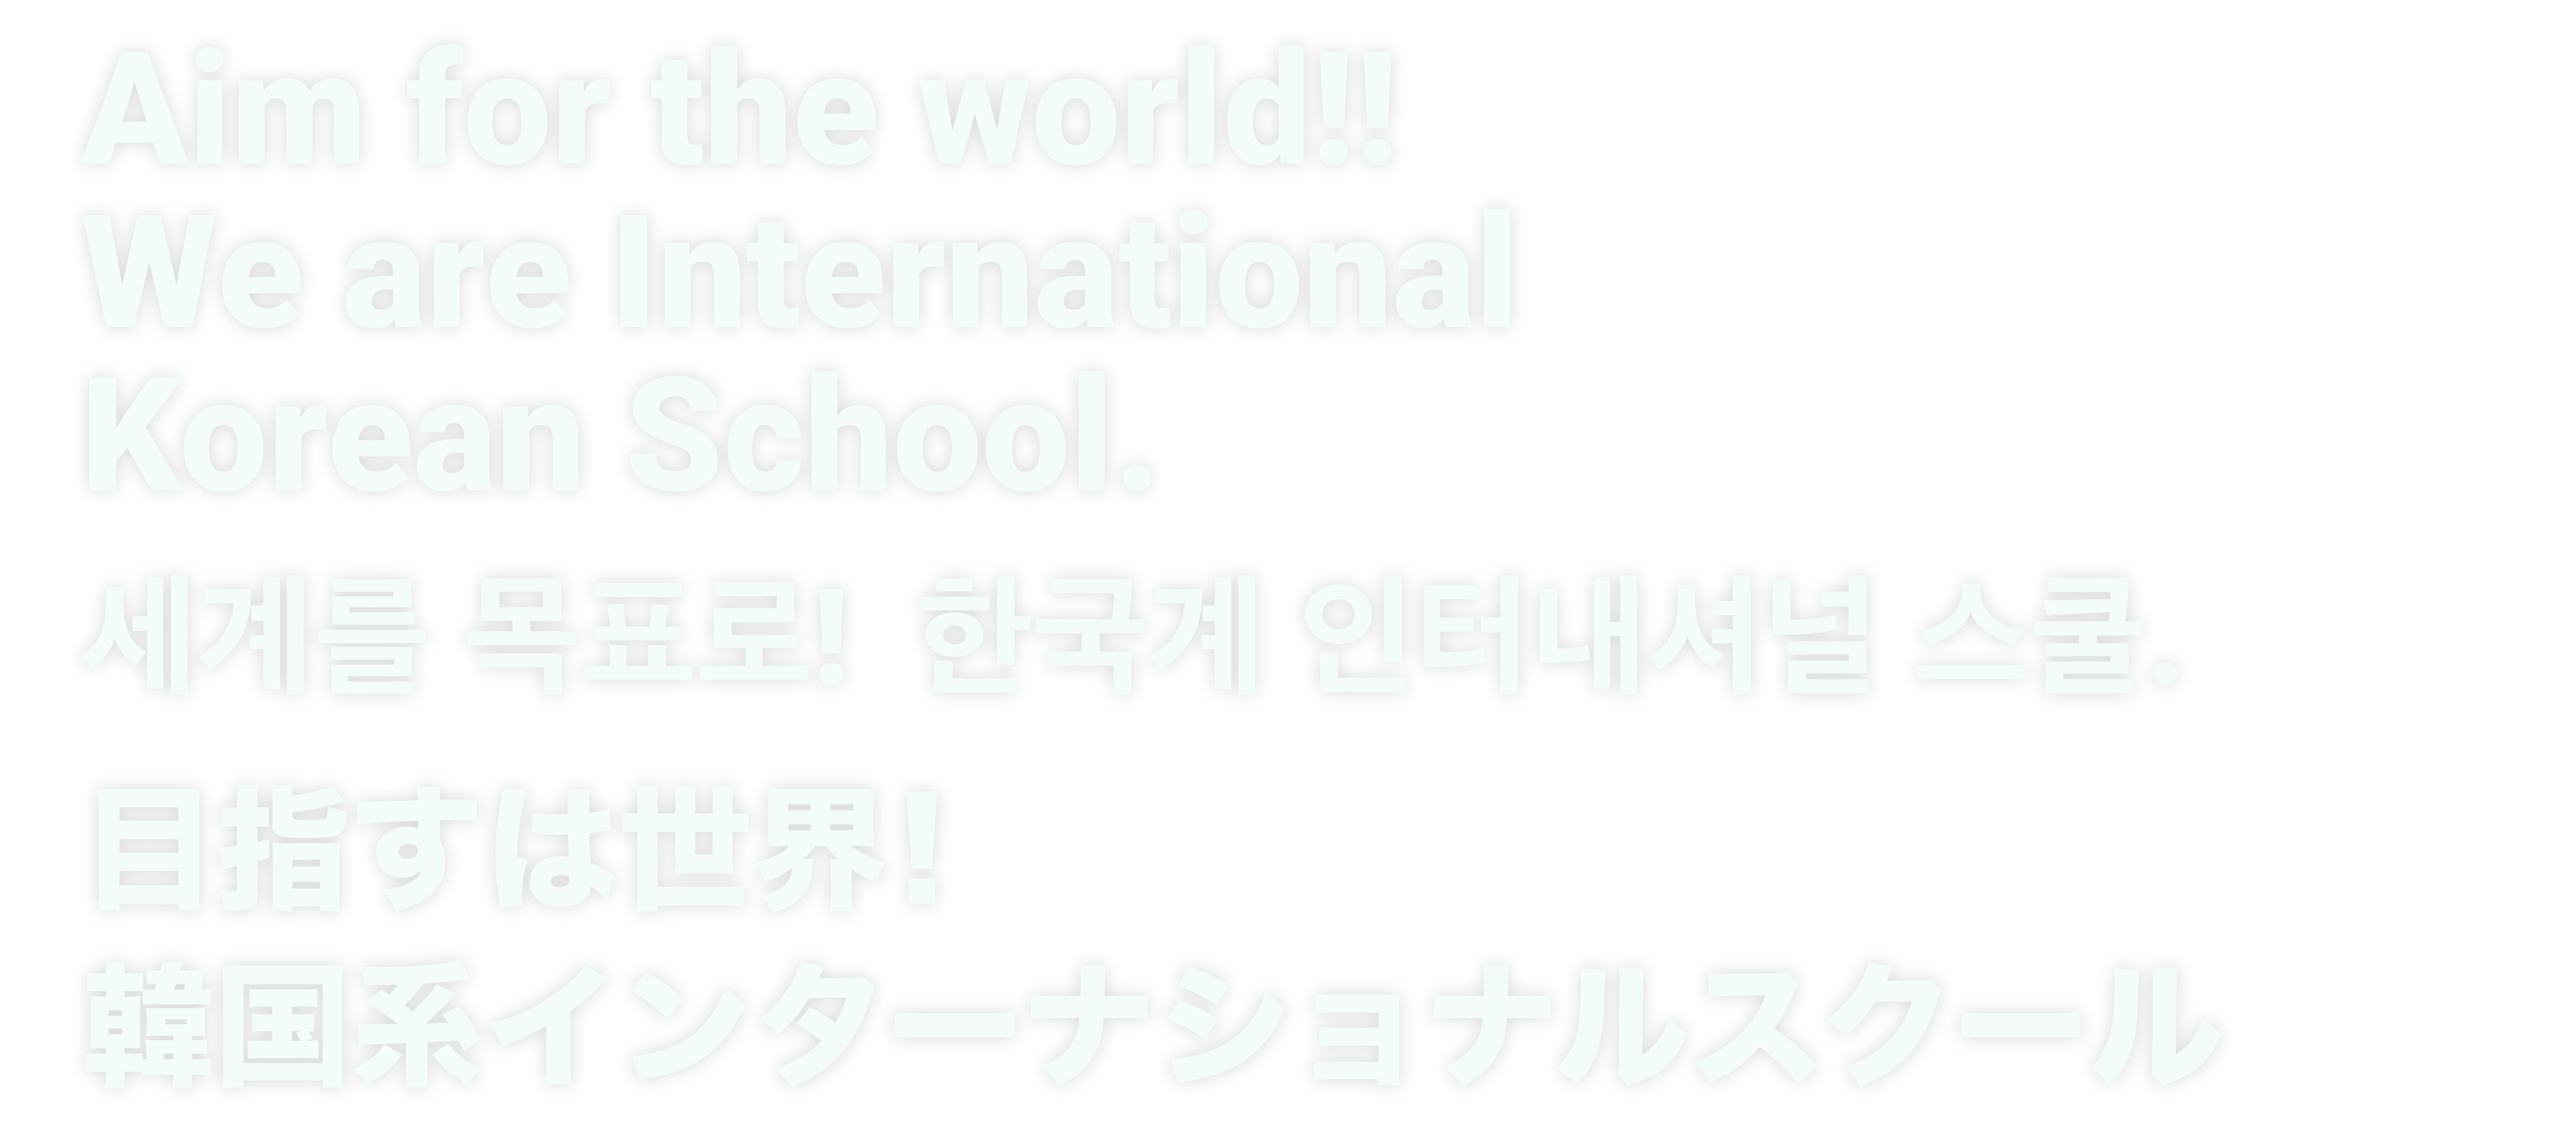 目指すは世界！韓国系インターナショナルスクール / Aim for the world!! We are International Korean School. / 세계를 목표로! 한국계 인터내셔널 스쿨.